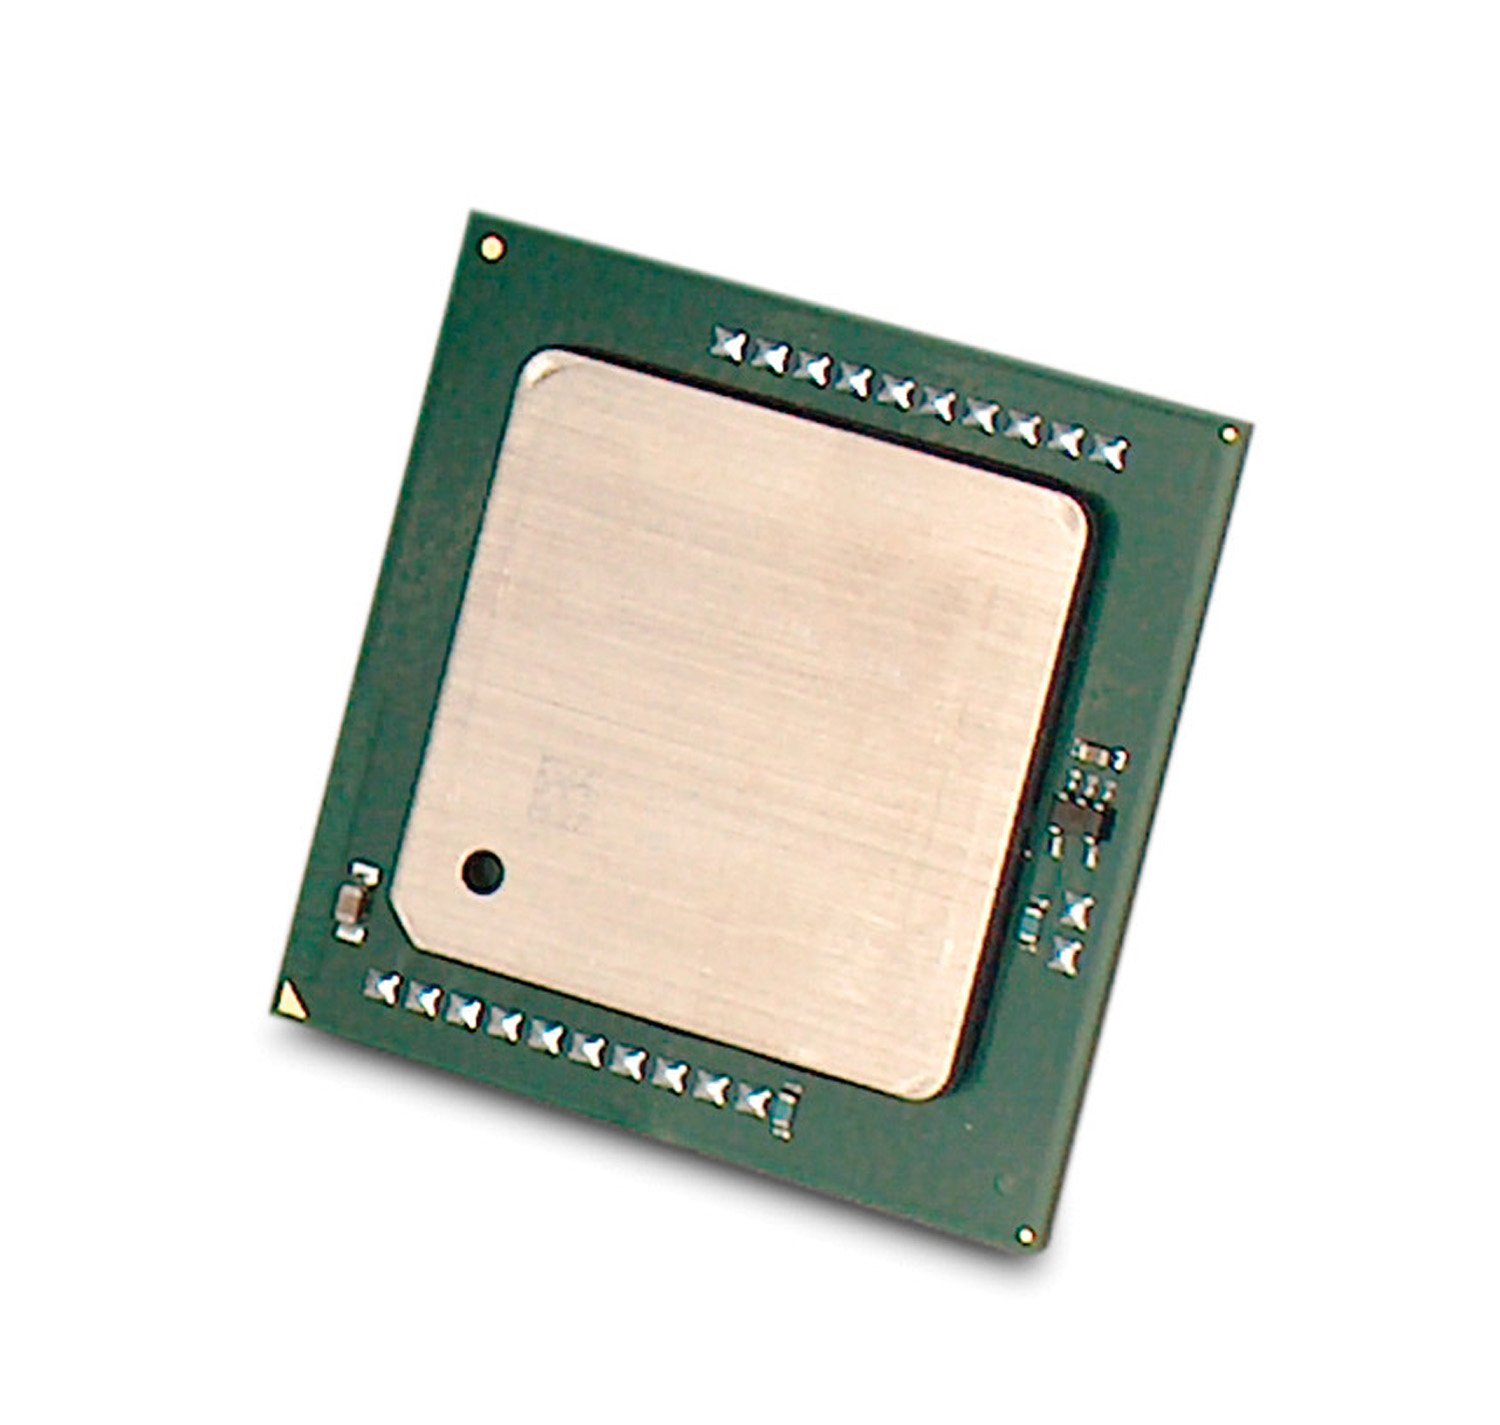 507682B21 - Intel Xeon DP Quad-core E5504 2GHz - Processor Upgrade 2 GHz - 4.80 GT/s QPI - 1 MB L2 - 4 MB L3 - Socket B